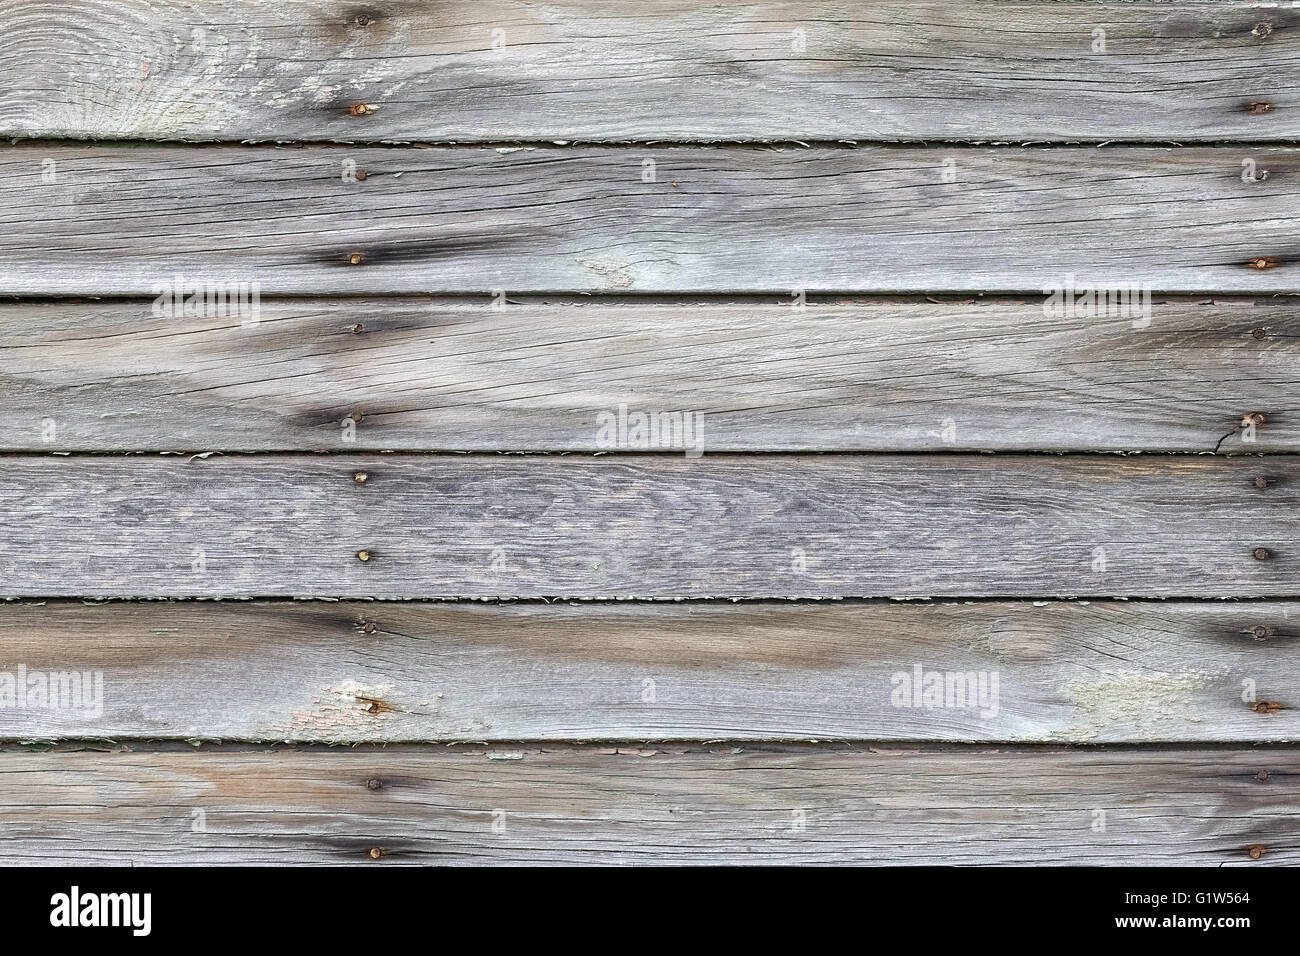 Viejas placas de madera desgastada con clavos oxidados. Foto de stock